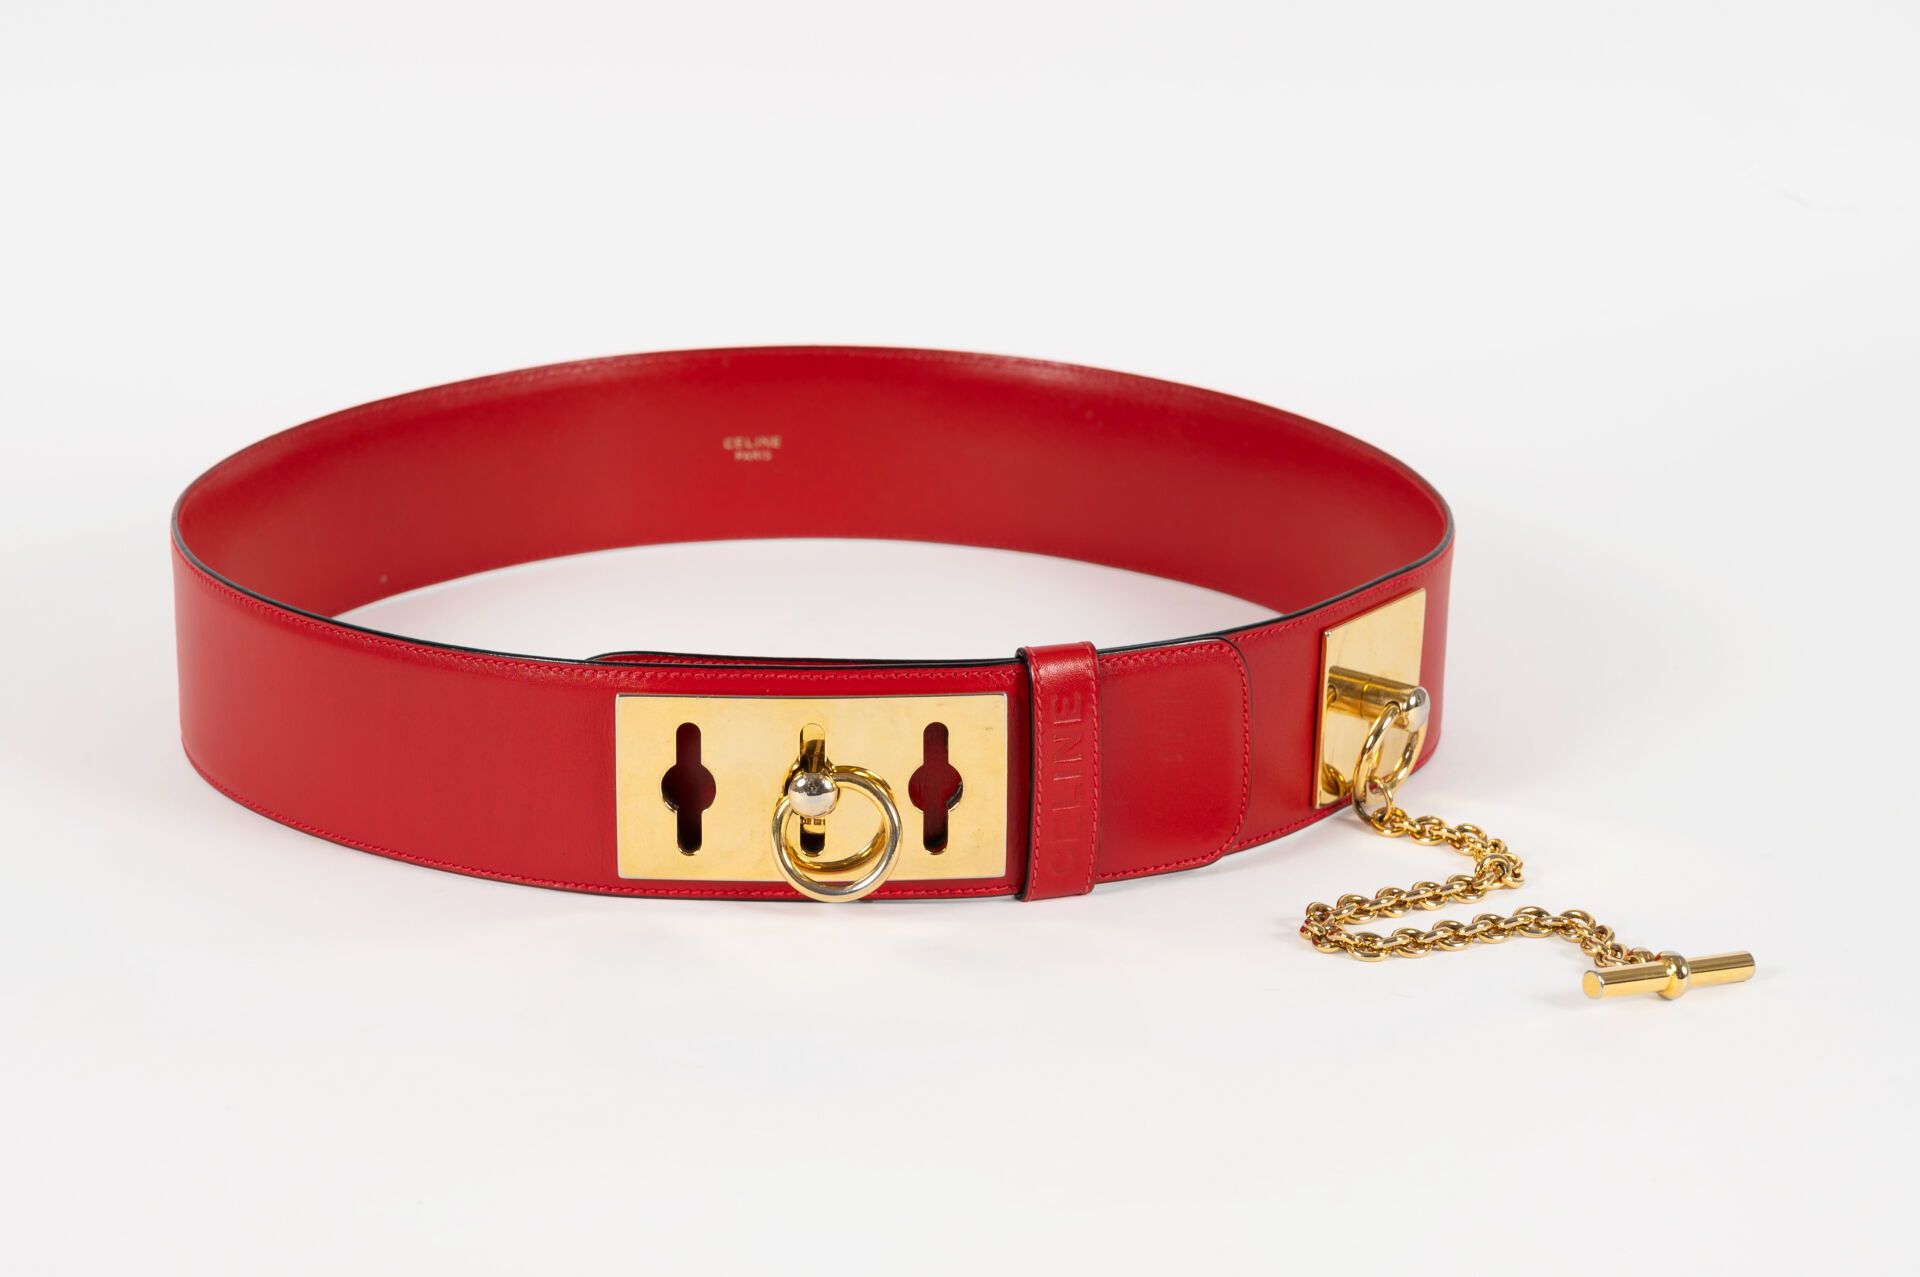 CELINE Roter Ledergürtel mit goldfarbener Metallschließe.
Länge: 100 cm - Größe &hellip;